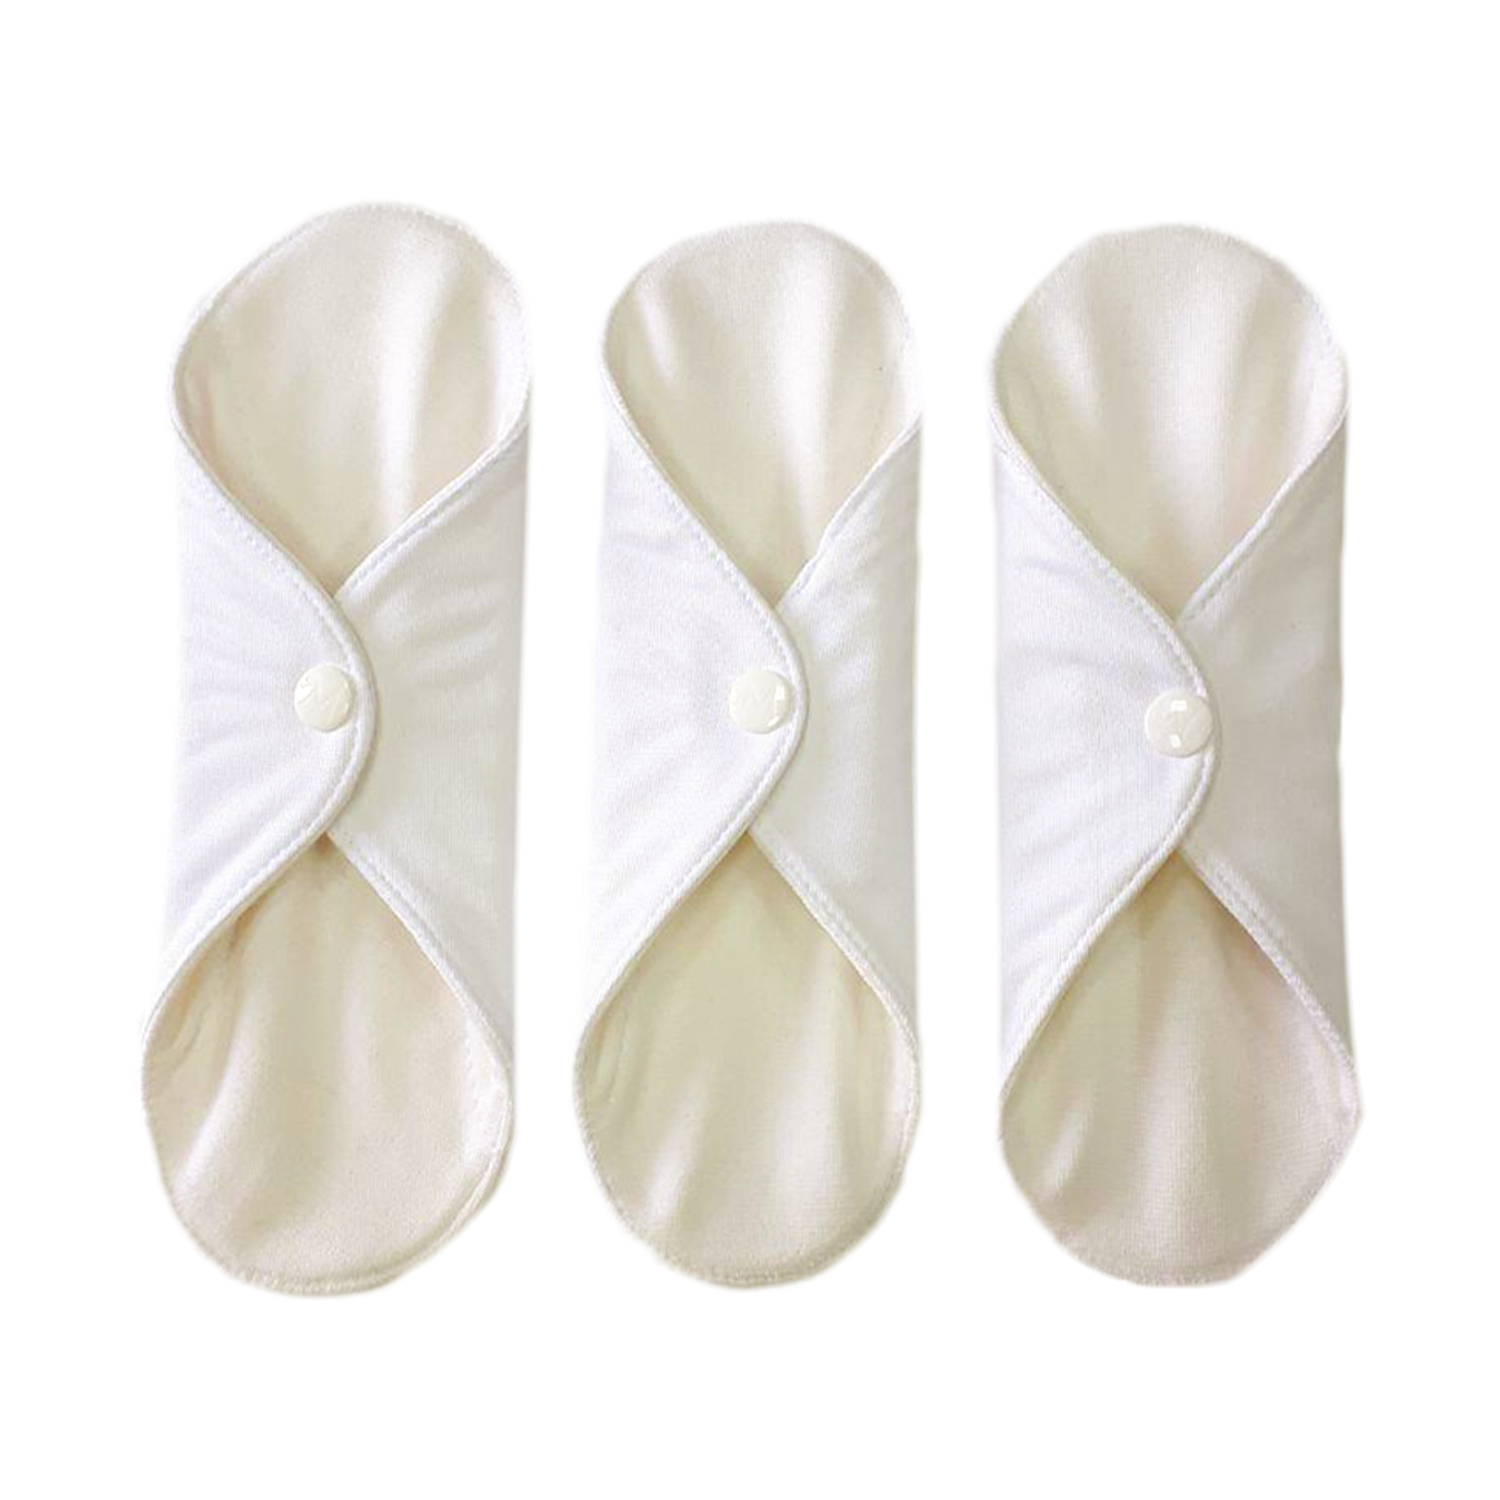 Прокладки Mamalino миди многоразовые гигиенические из хлопка для критических дней бежевые 3 шт - фото 1